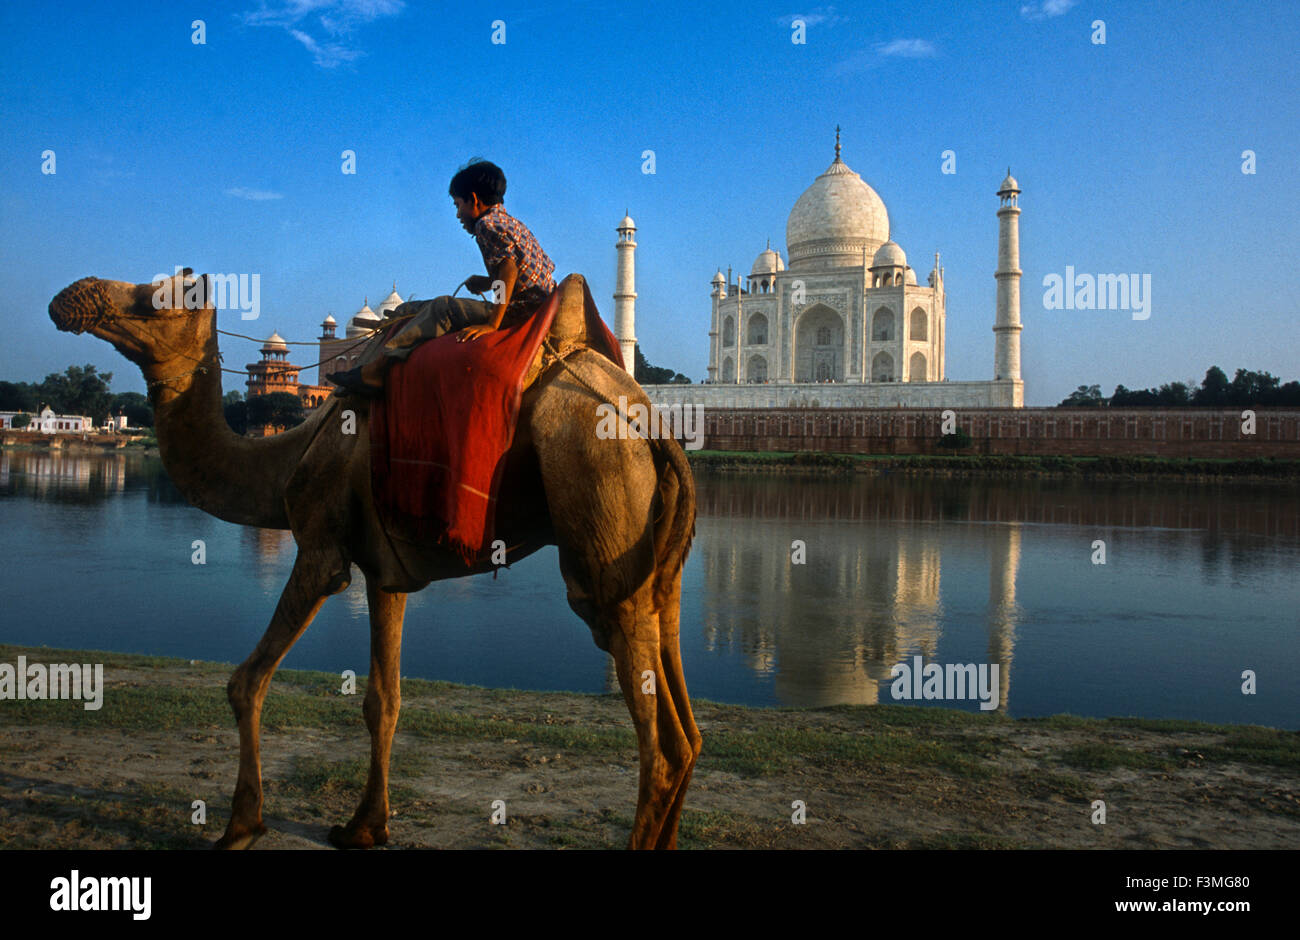 Agra, Uttar Pradesh, Indien. Kamel und indische Junge neben dem Fluss auf das Taj Mahal in Agra. Ein indischer Junge mit seinem Kamel reitet am Ufer des Flusses Yamuna mit dem Taj Mahal im Hintergrund. Besuchen Indiens bekannteste Reiseziel, das Taj Mahal in Agra, Uttar Pradesh. Das Taj wurde von Shah Jahan als Mausoleum für seine dritte Frau unsere verstorbenen im Jahre 1631. Im Jahr 1632 begonnen und im Jahre 1653, das Taj Mahal ist ein UNESCO-Weltkulturerbe und gilt als eines der acht Weltwunder. Stockfoto